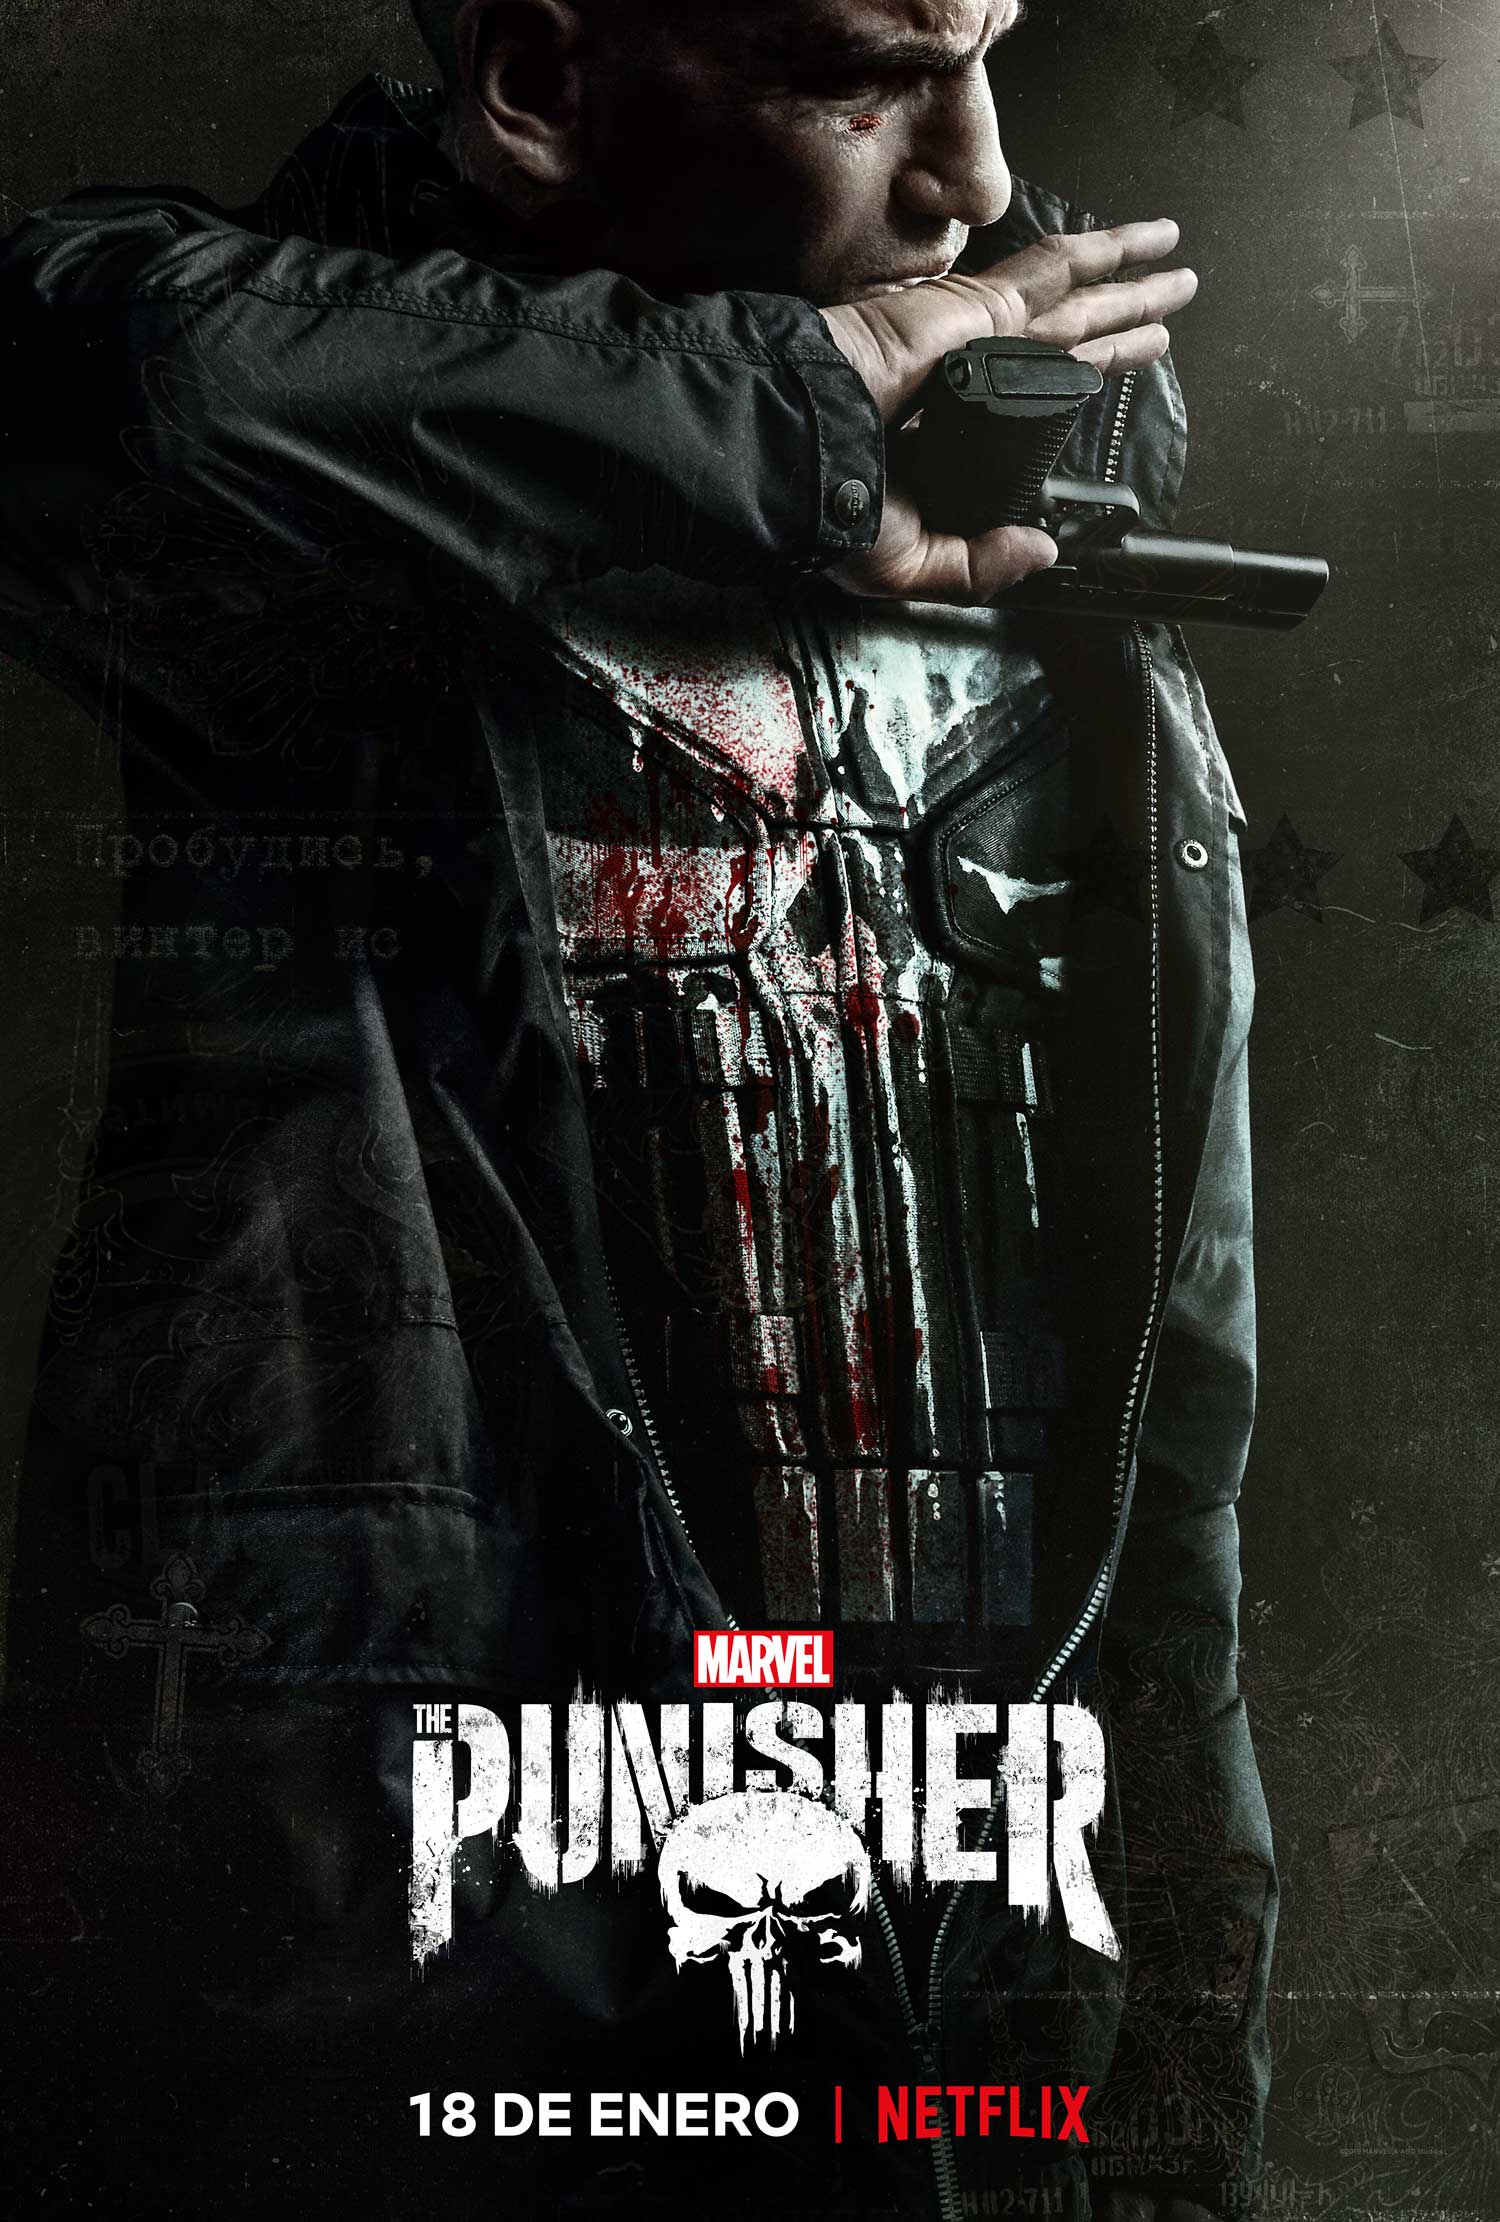 Déjame ser quien debo ser: Ya está aquí el tráiler de la 2ª temporada de 'The Punisher'